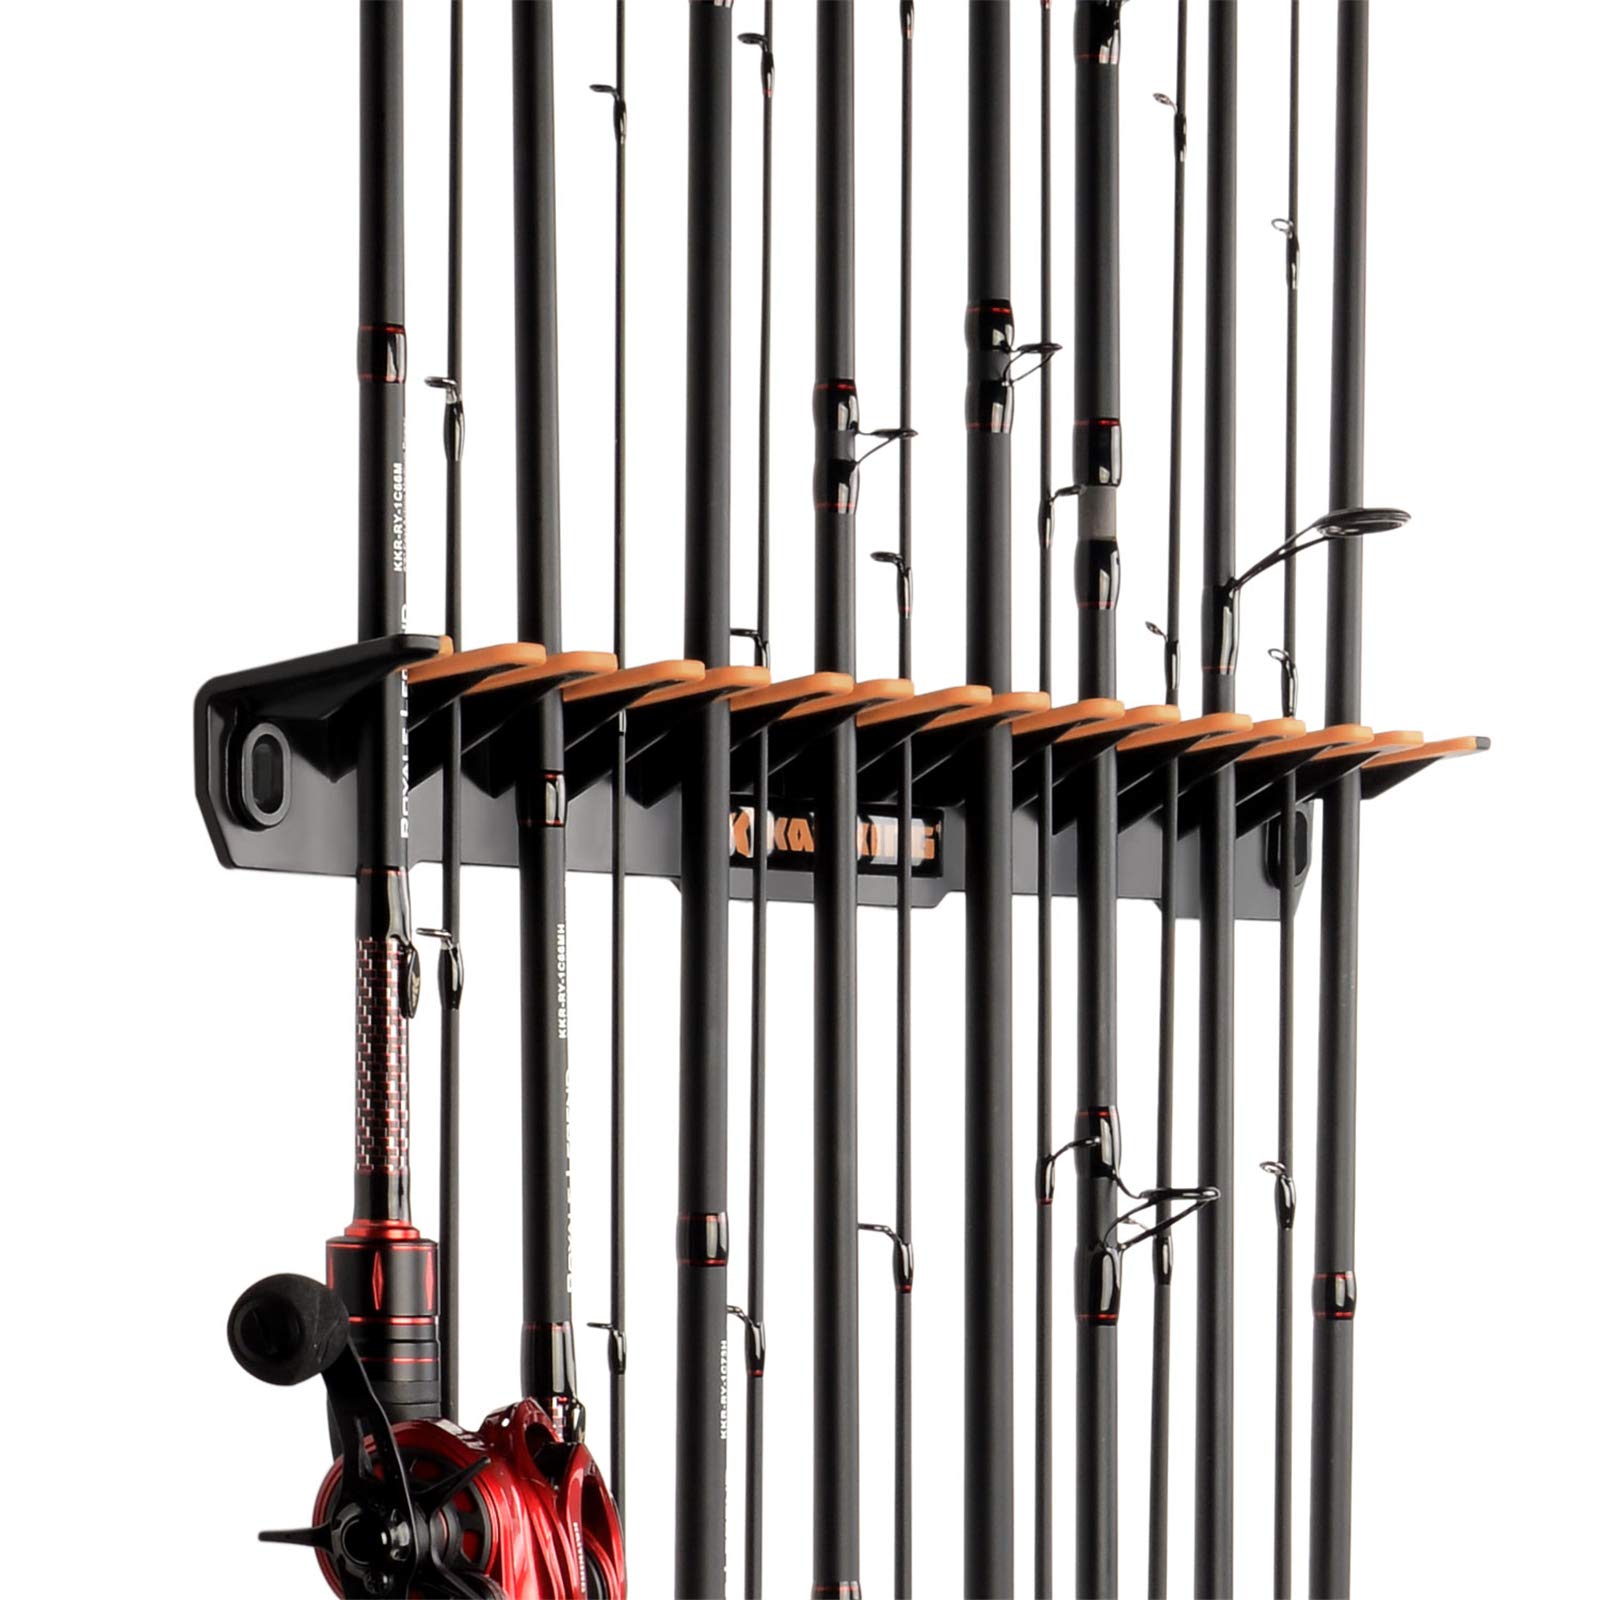  Fishing Rod Holder Fishing Pole Holder Fishing Gear